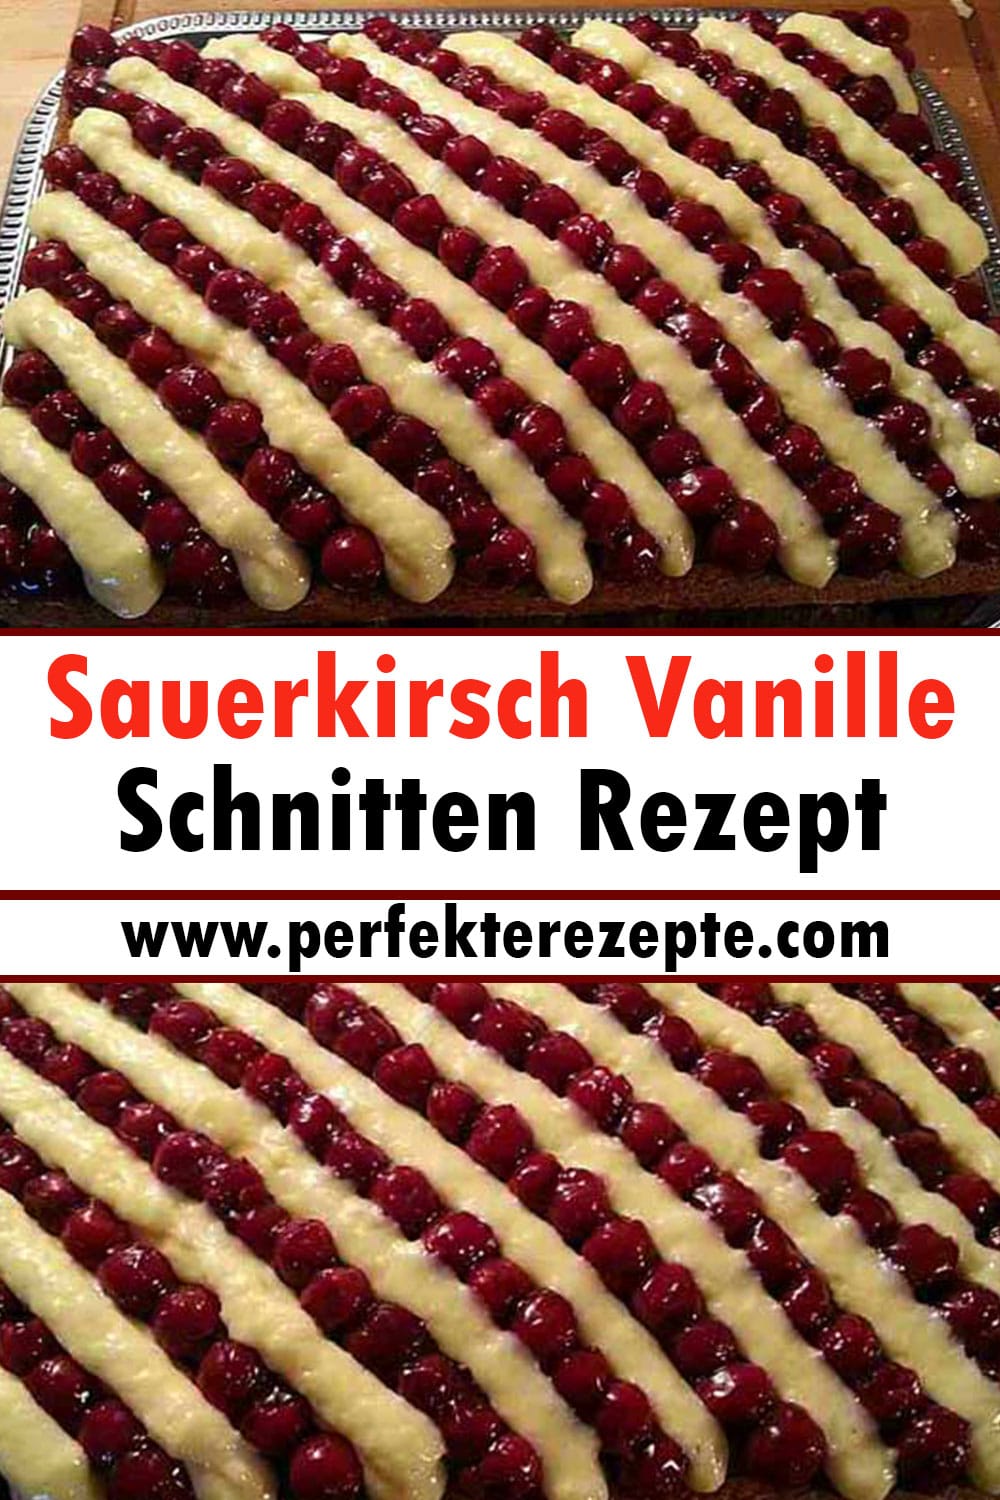 Sauerkirsch Vanille Schnitten Rezept